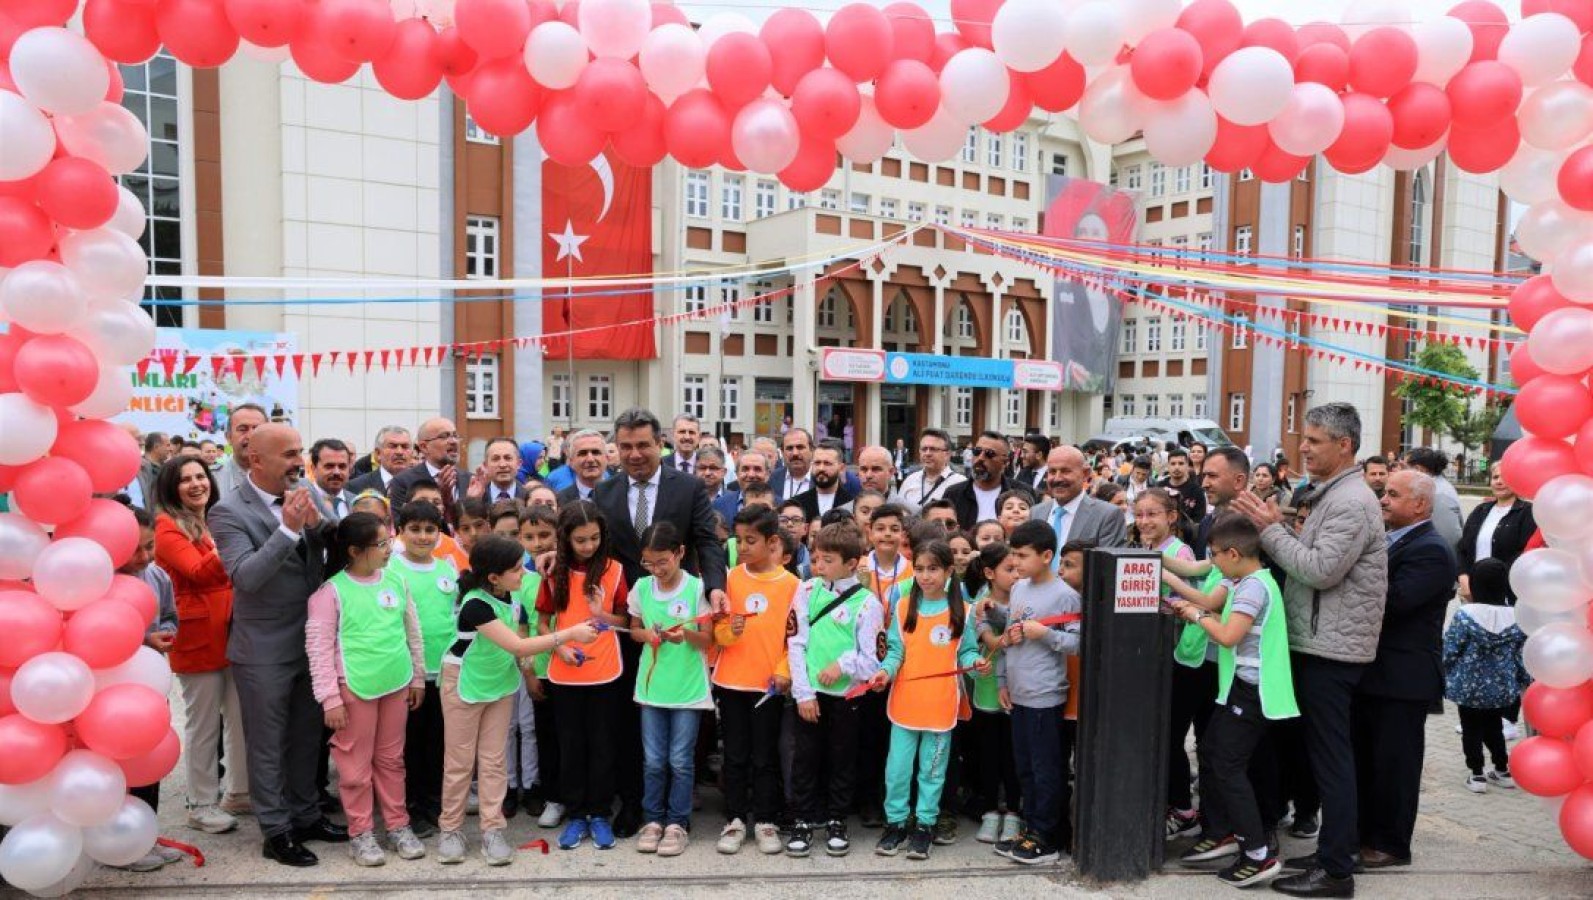 Kastamonu'da "Çocuk Oyunları Şenliği" düzenlendi